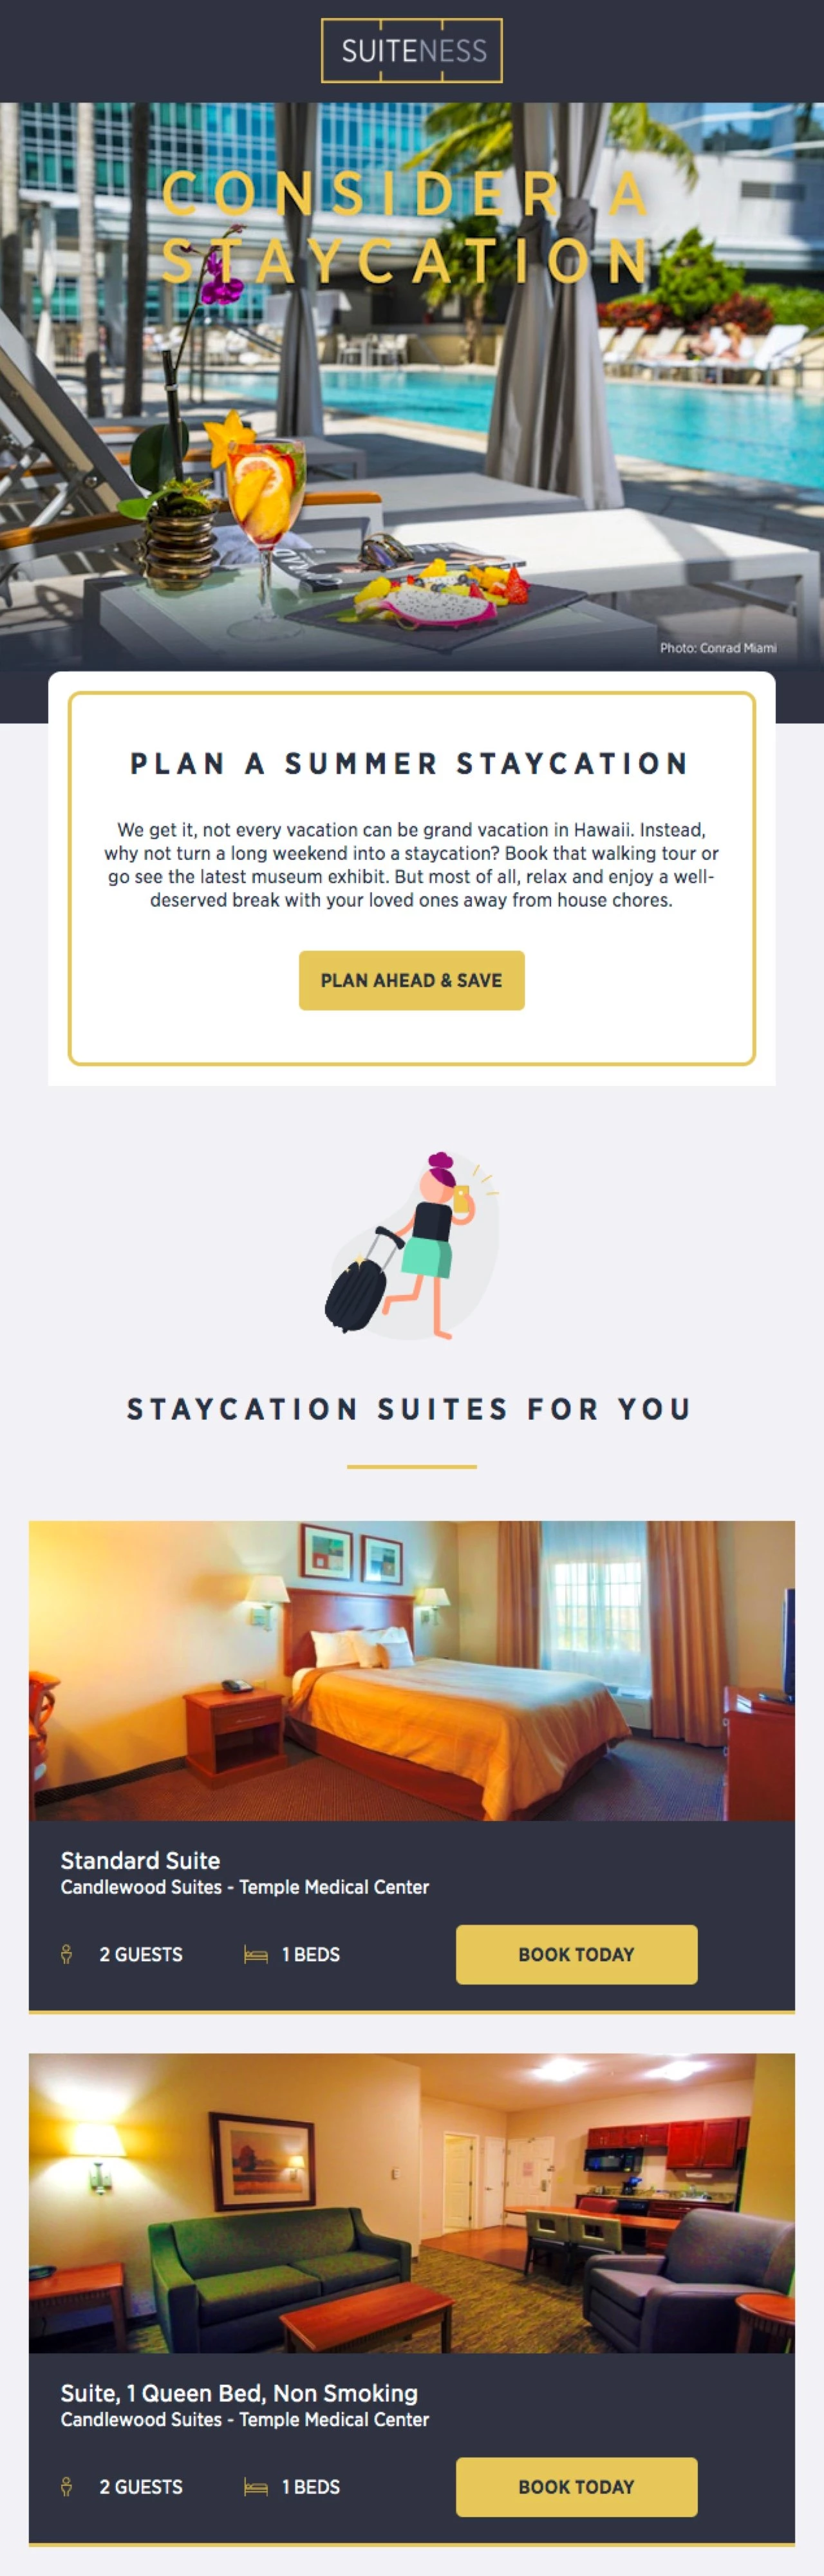 Ejemplo de newsletter de Suiteness hotel